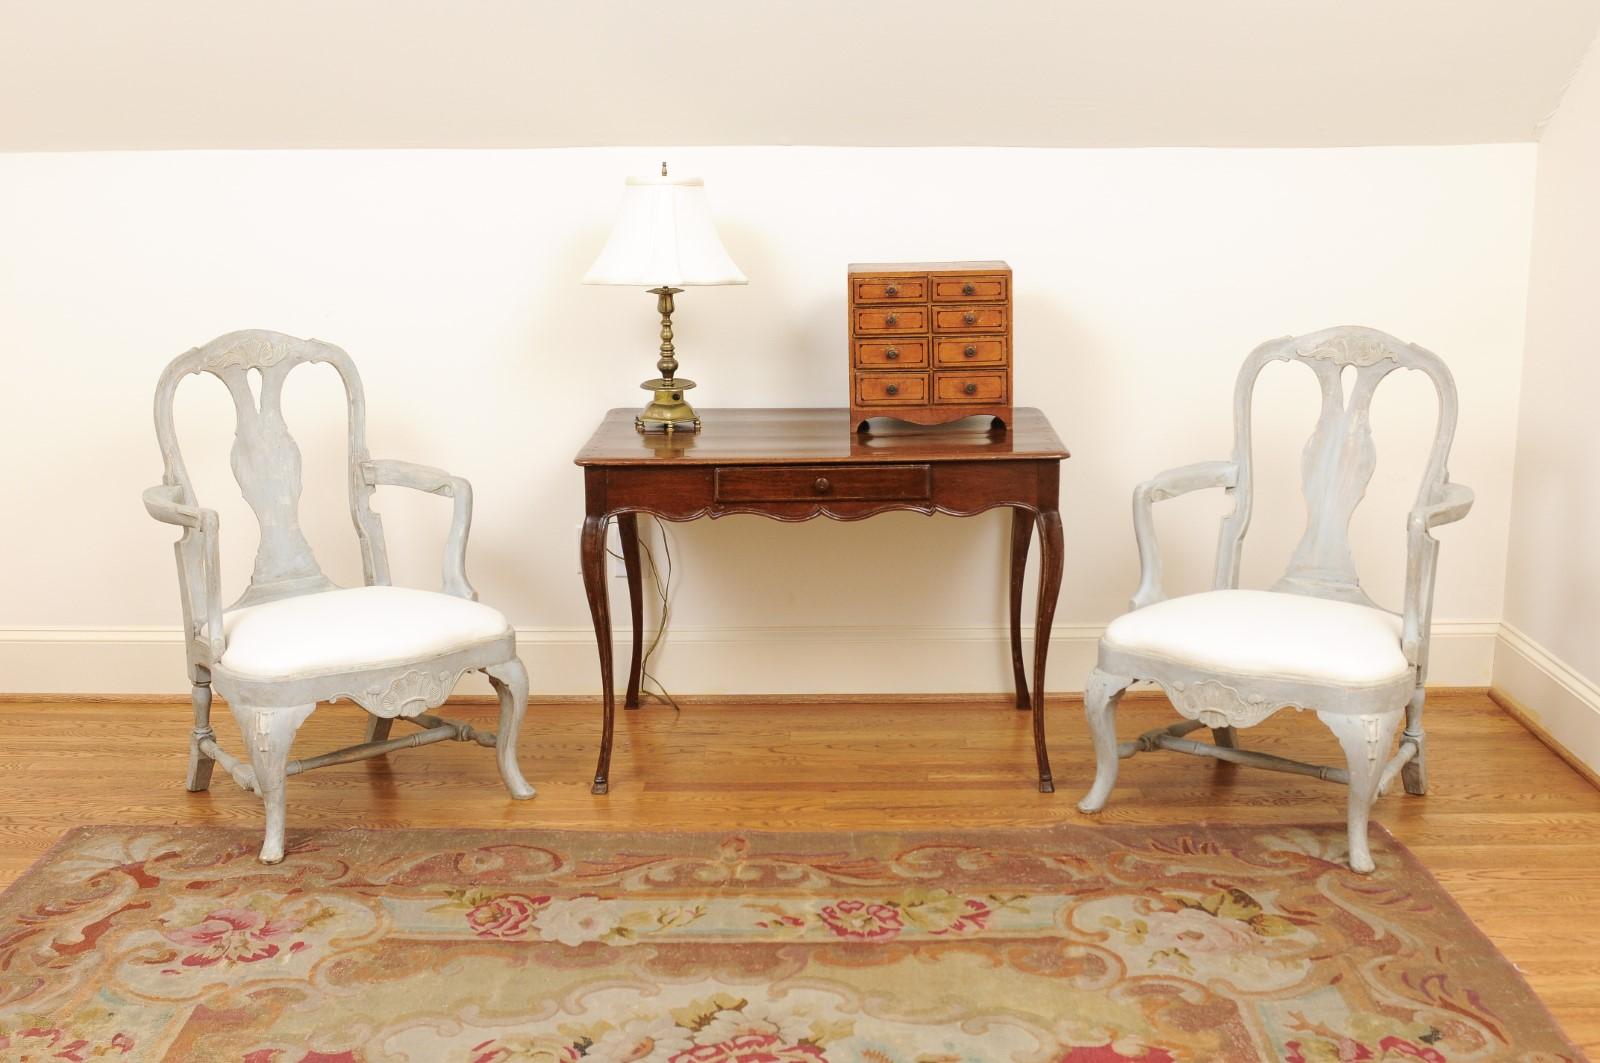 Paire de fauteuils suédois en bois peint de style rococo, datant de la fin du XIXe siècle, avec cannelures sculptées, pieds cabriole et tapisserie d'ameublement. Créée en Suède au cours de la dernière décennie du XIXe siècle, cette paire de